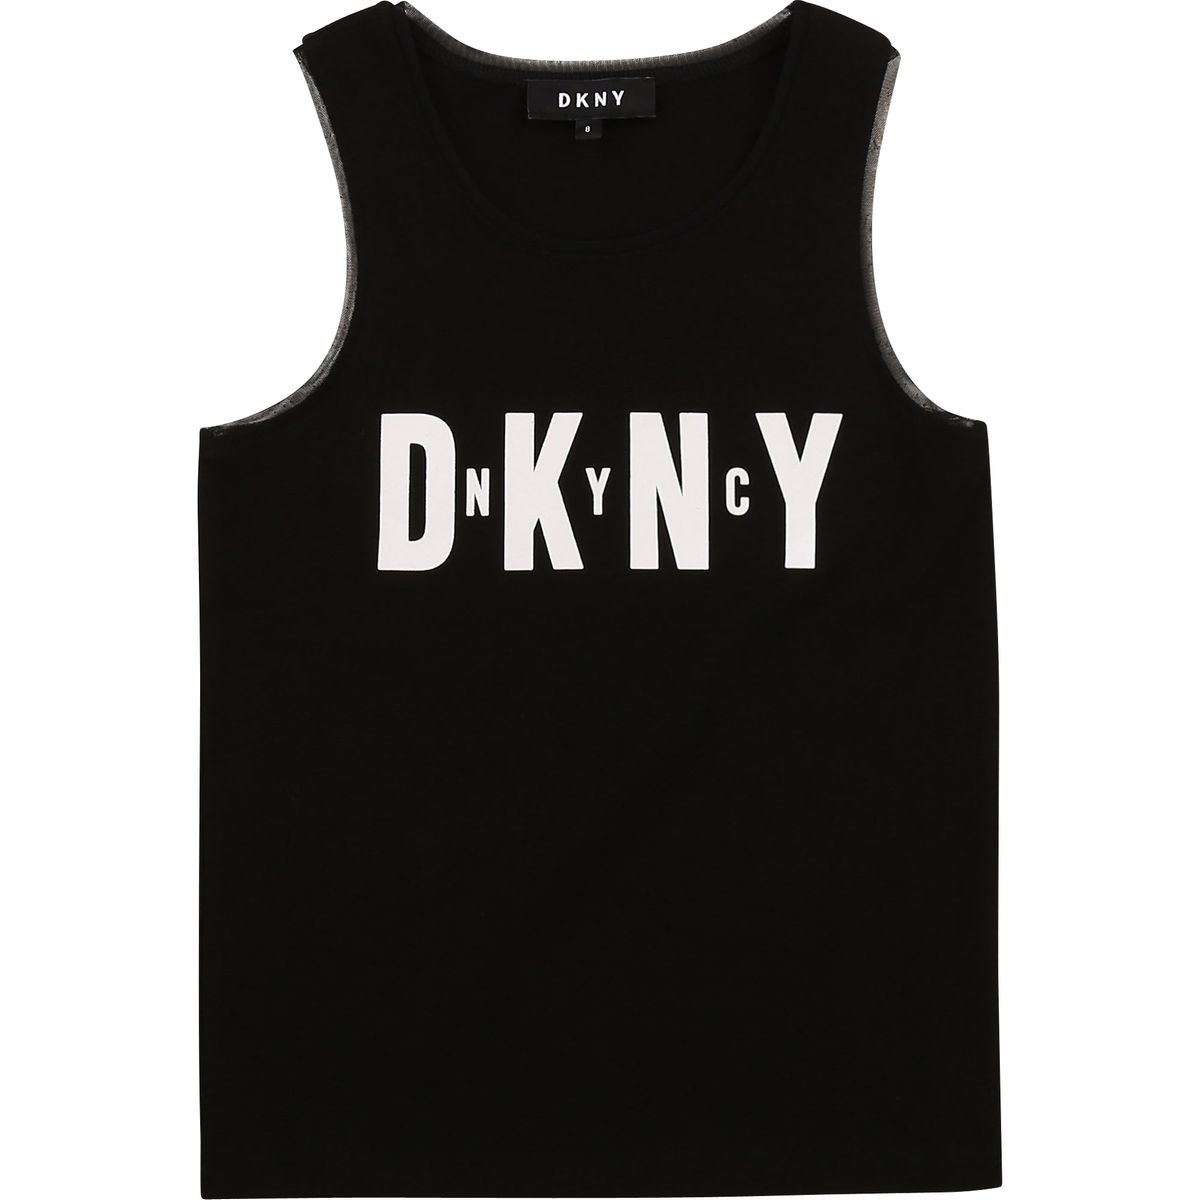 Enfant Fille DKNY Vêtements DKNY Enfant Hauts DKNY Enfant Débardeurs DKNY Enfant Débardeurs DKNY Enfant Débardeur DKNY 15-16 ans gris 